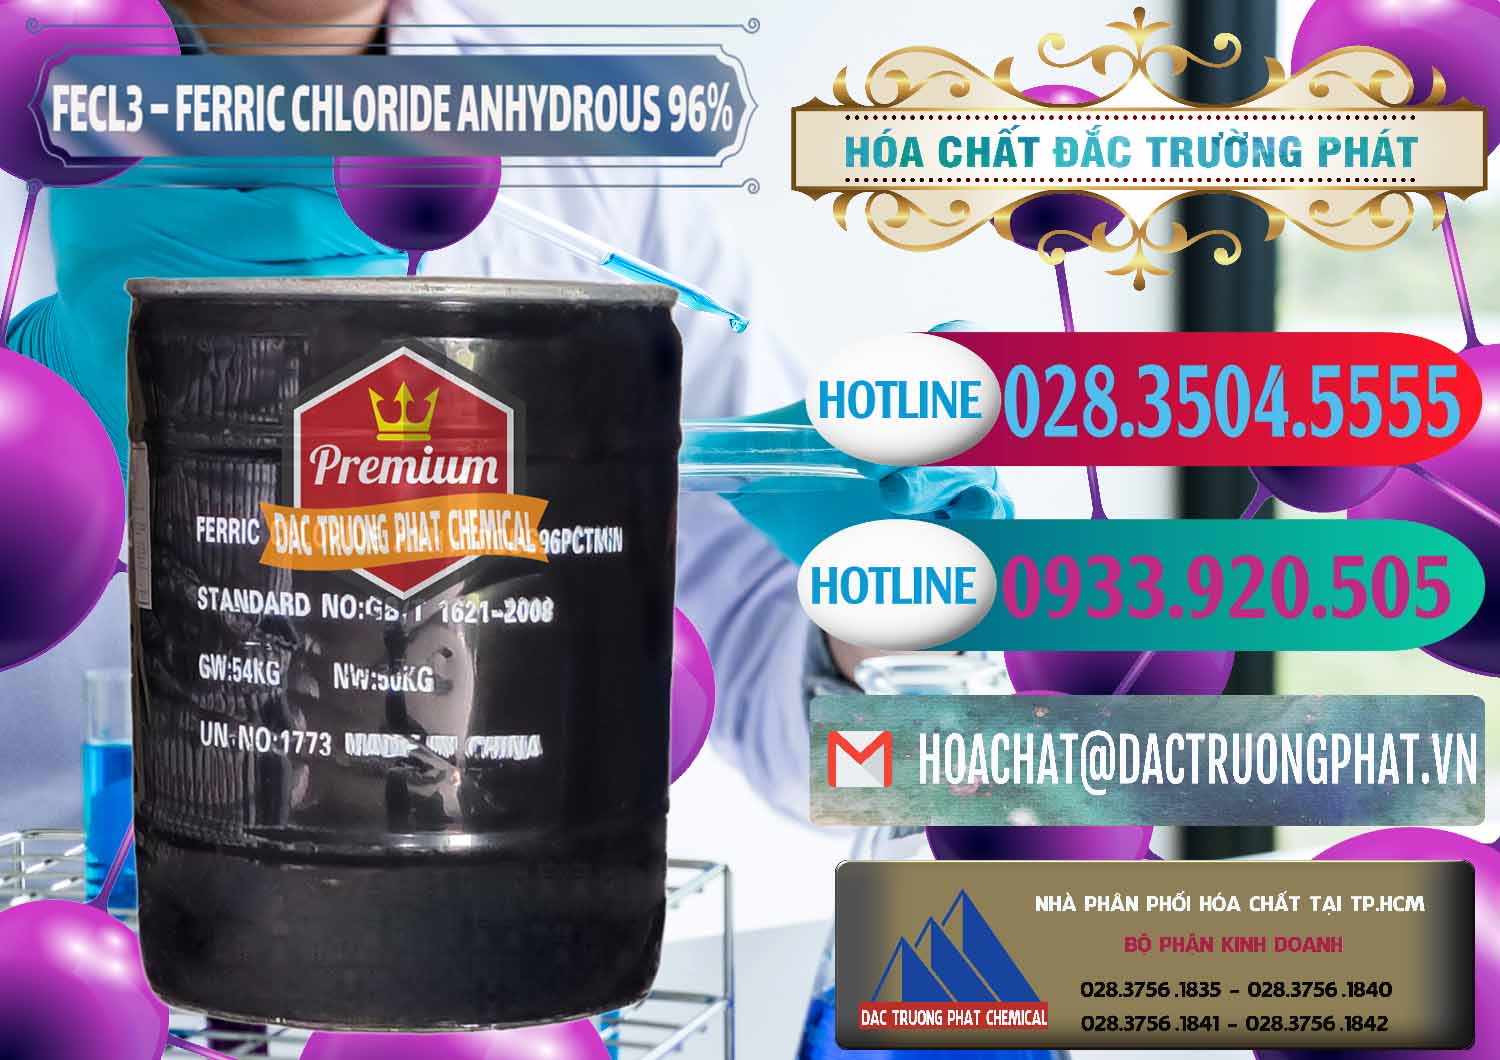 Chuyên bán ( cung cấp ) FECL3 – Ferric Chloride Anhydrous 96% Trung Quốc China - 0065 - Chuyên phân phối _ cung cấp hóa chất tại TP.HCM - truongphat.vn